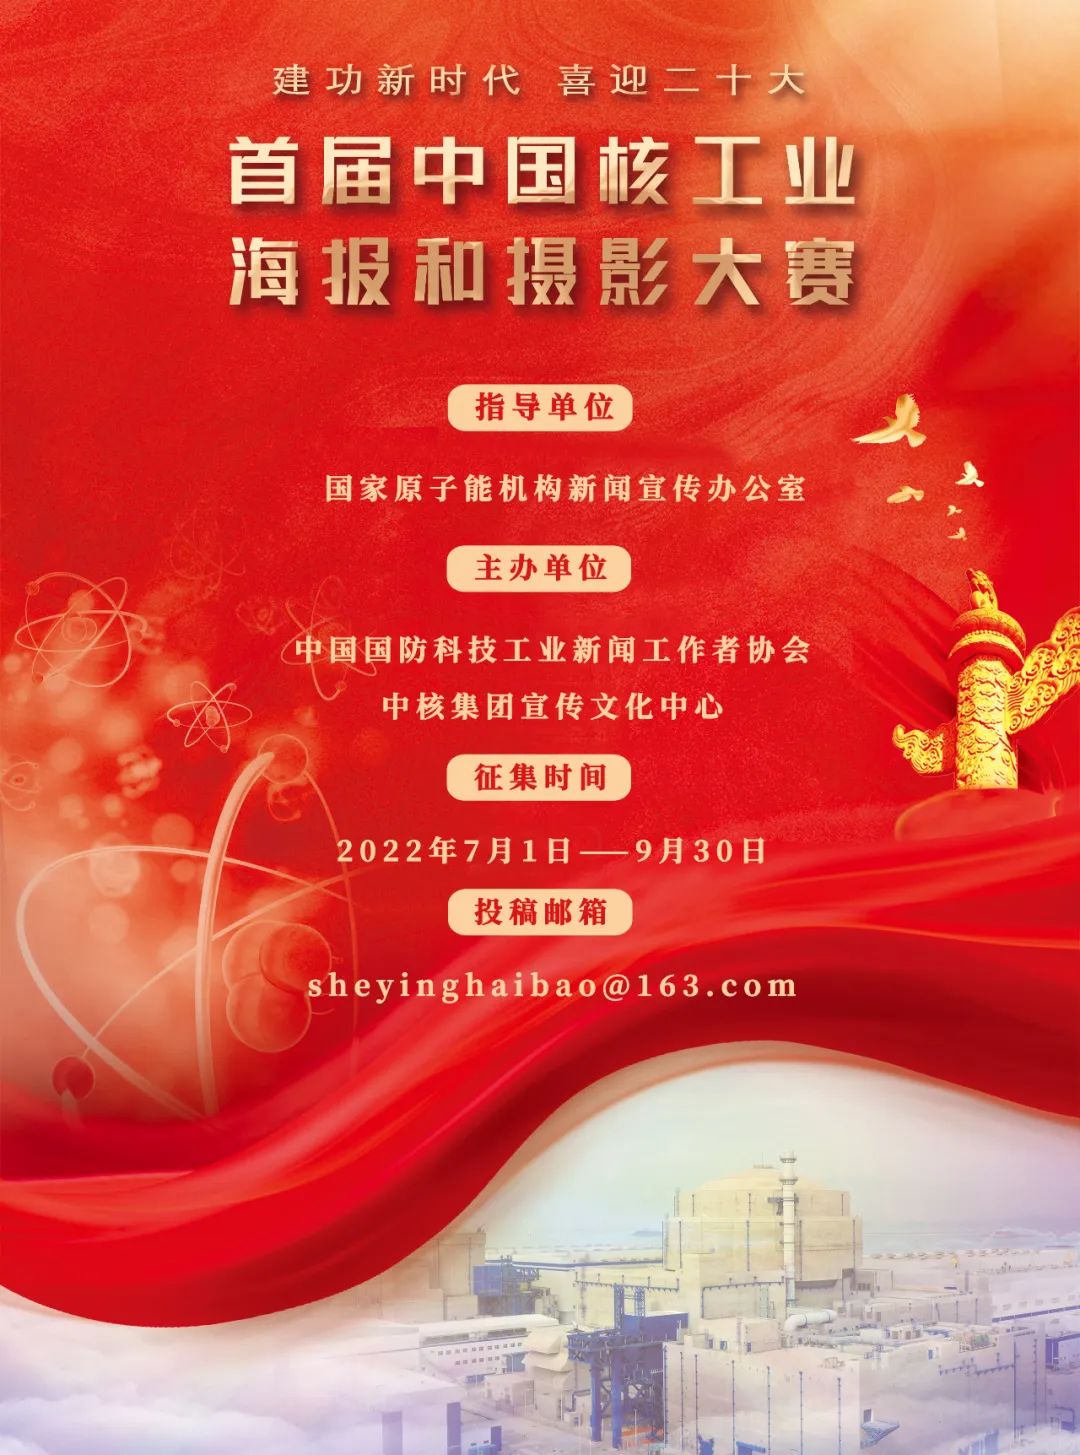 首届中国核工业海报和摄影大赛正式启动